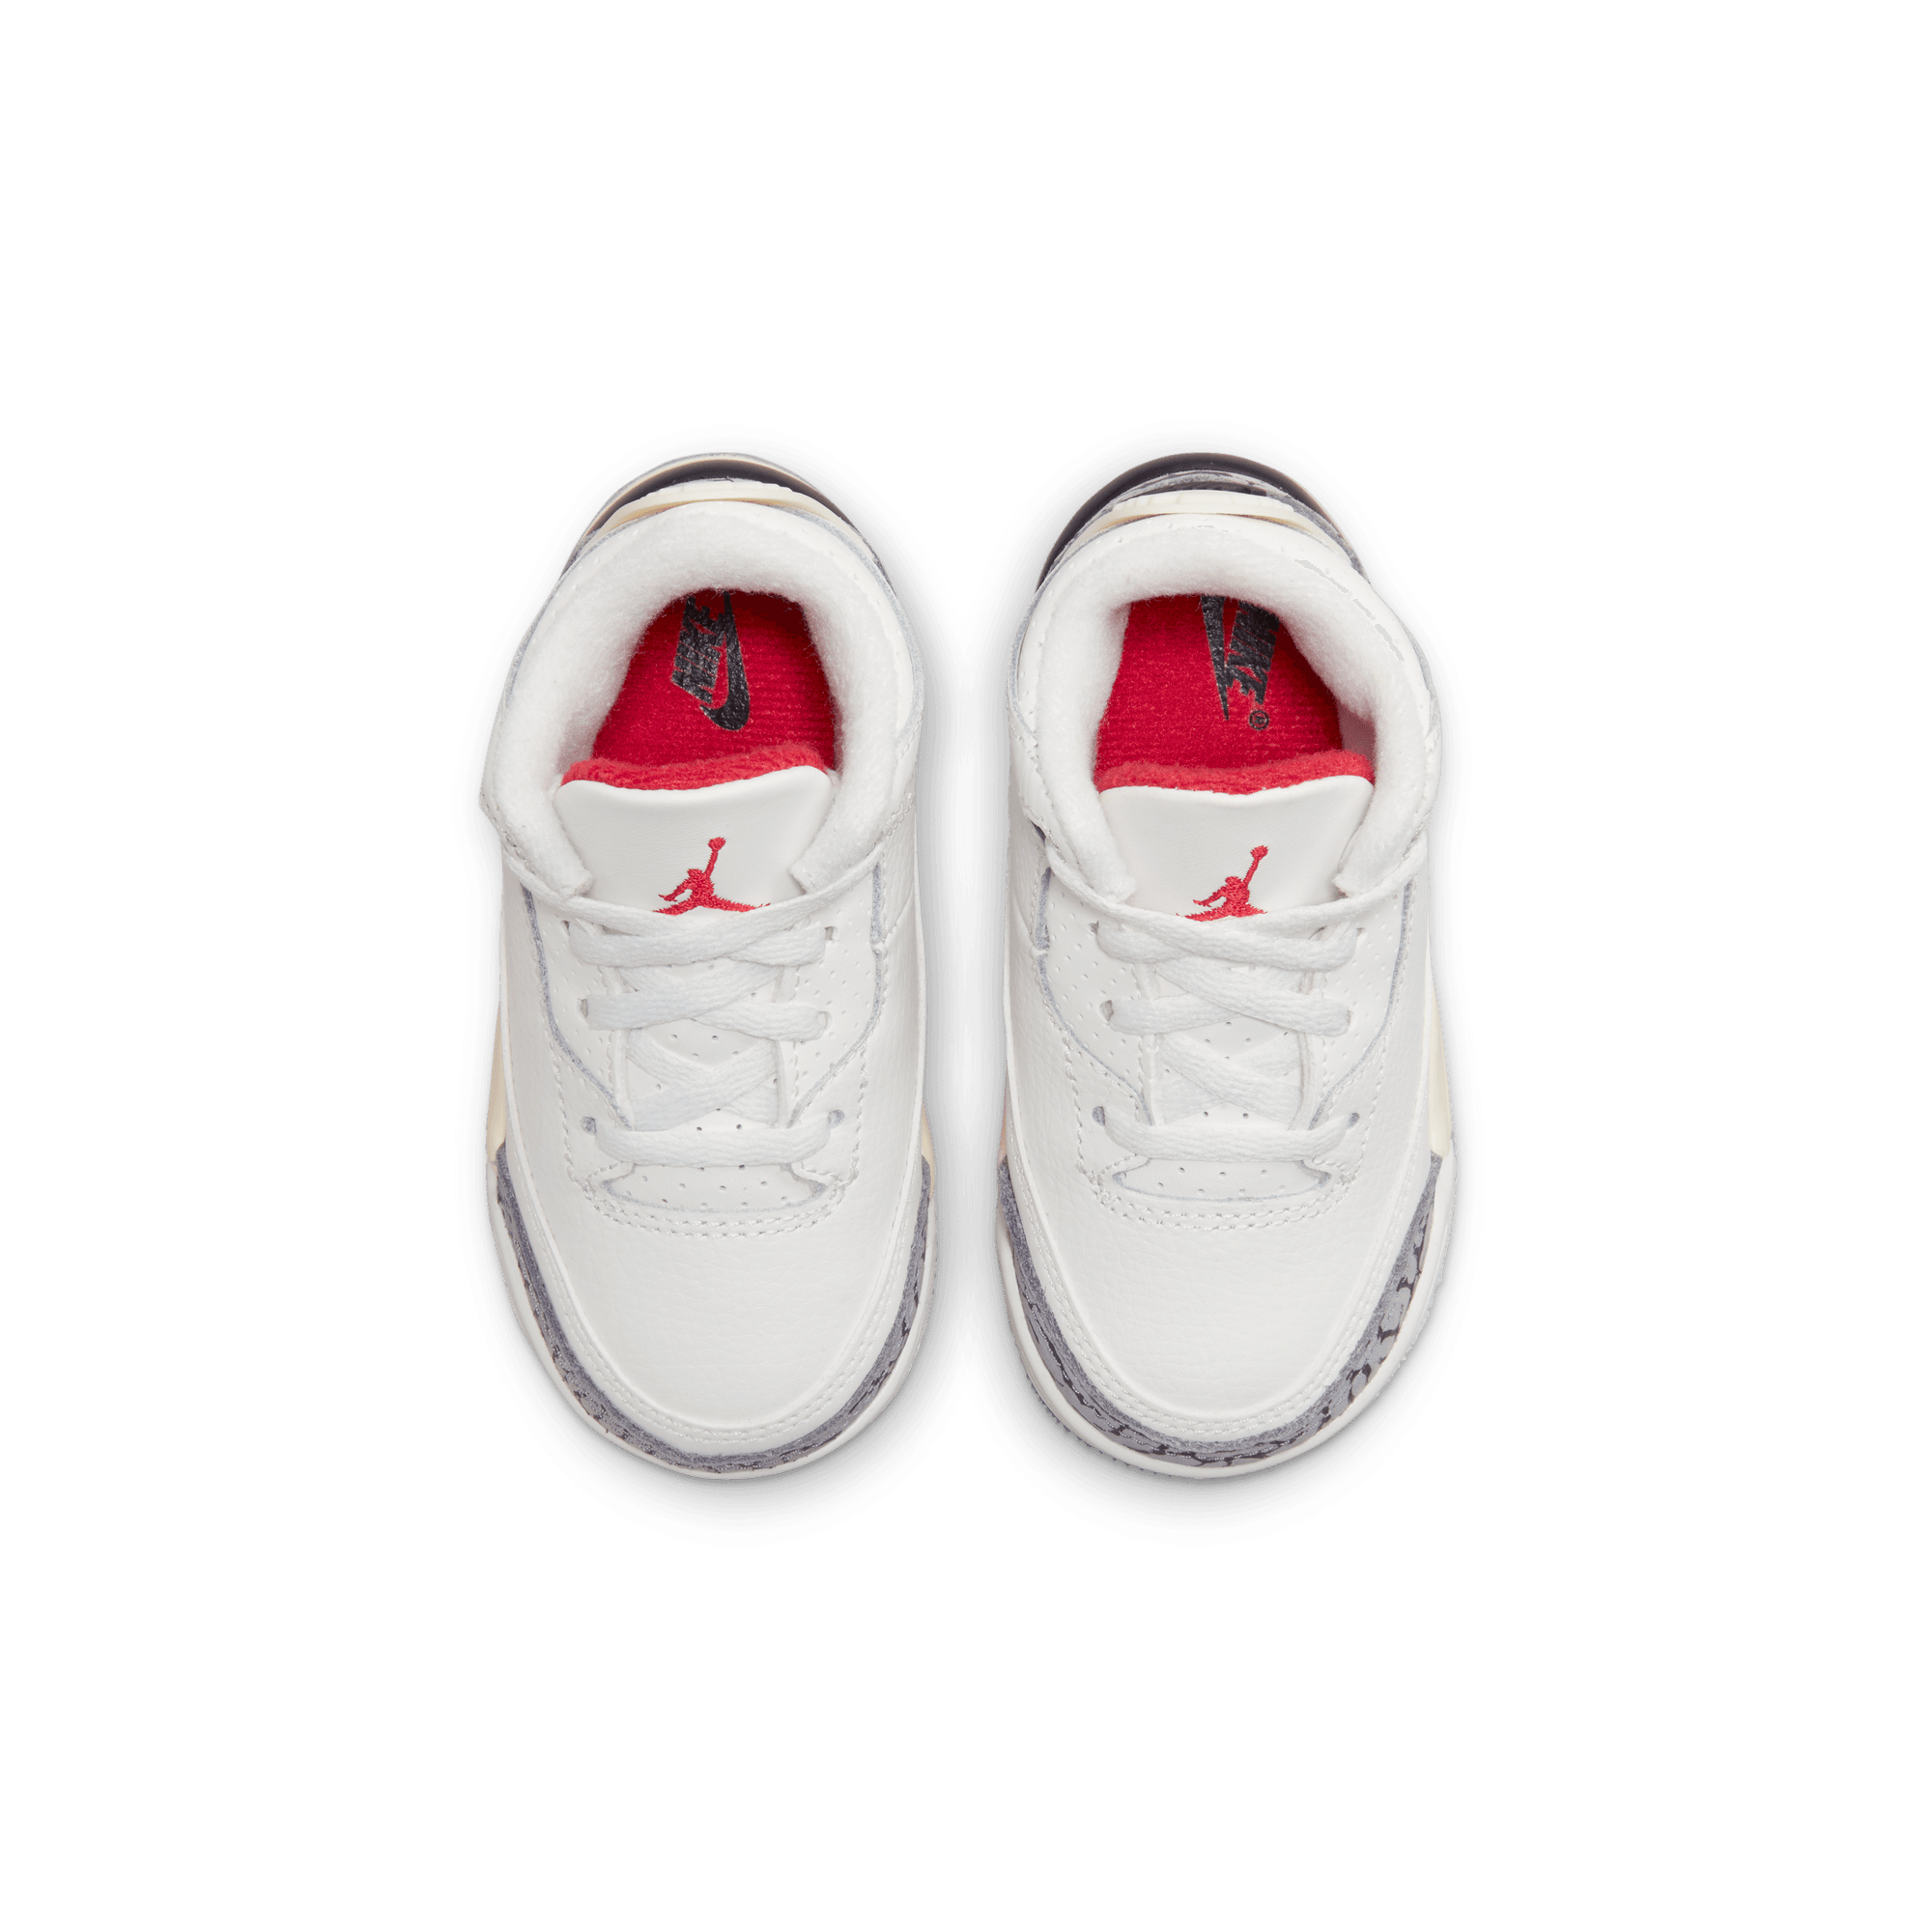 AJ Air Jordan 3 Retro - Toddler